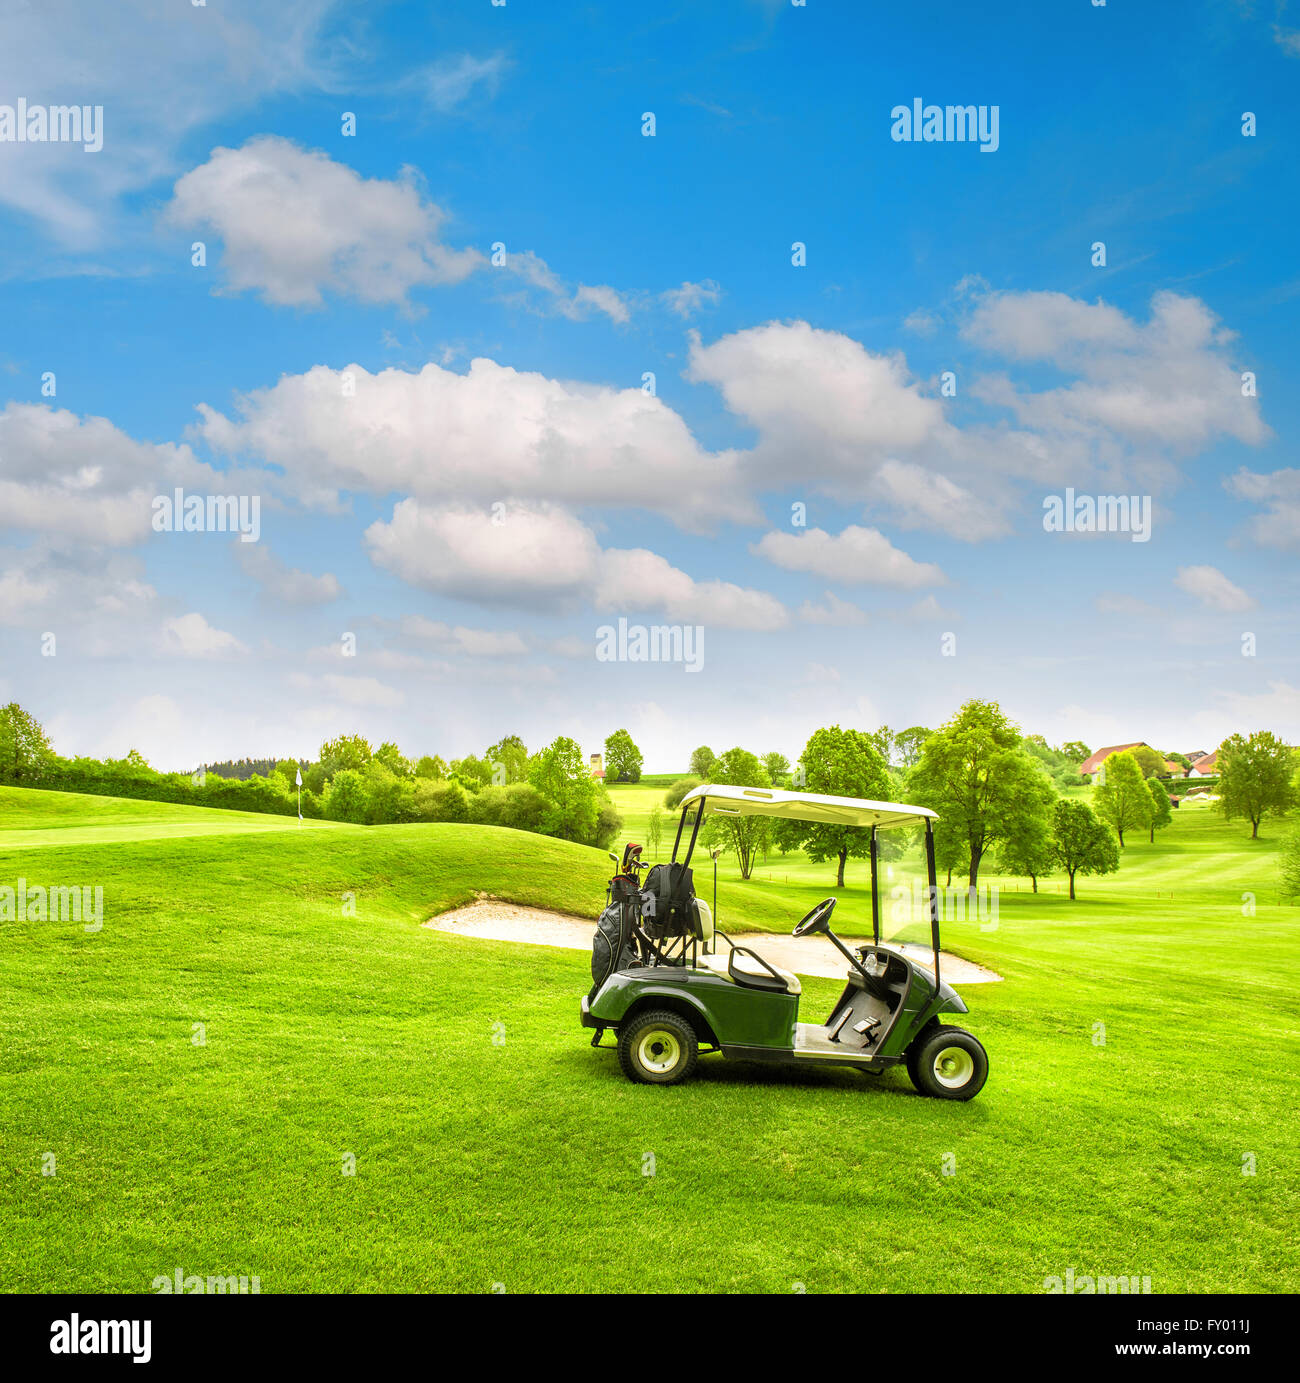 Verdi campi da golf Campo e nuvoloso cielo blu. Paesaggio di primavera con erba fresca. Colori brillanti Foto Stock